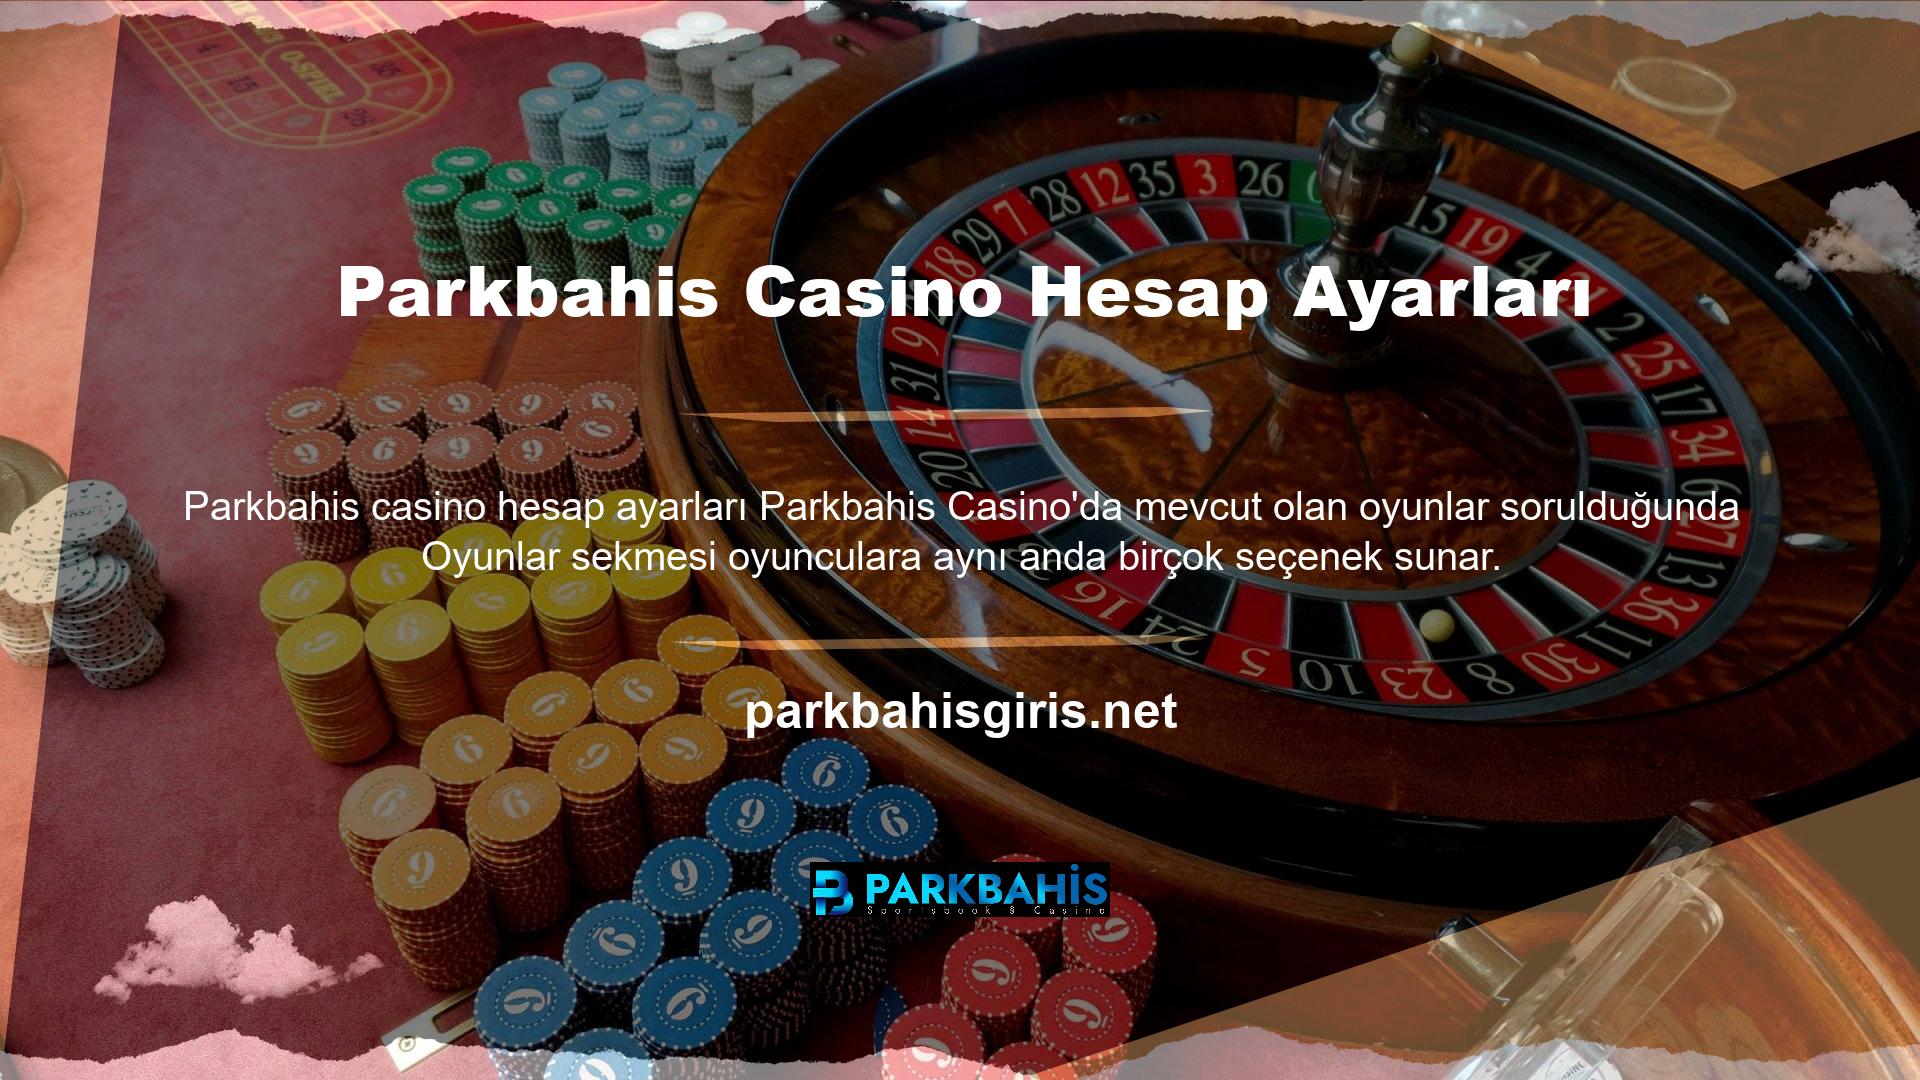 Alternatif oyunlar lehine bahis oynamak isteyen üyeler Parkbahis Casino hesap ayarlarından dolandırıcılık iddiasında bulunabilirler